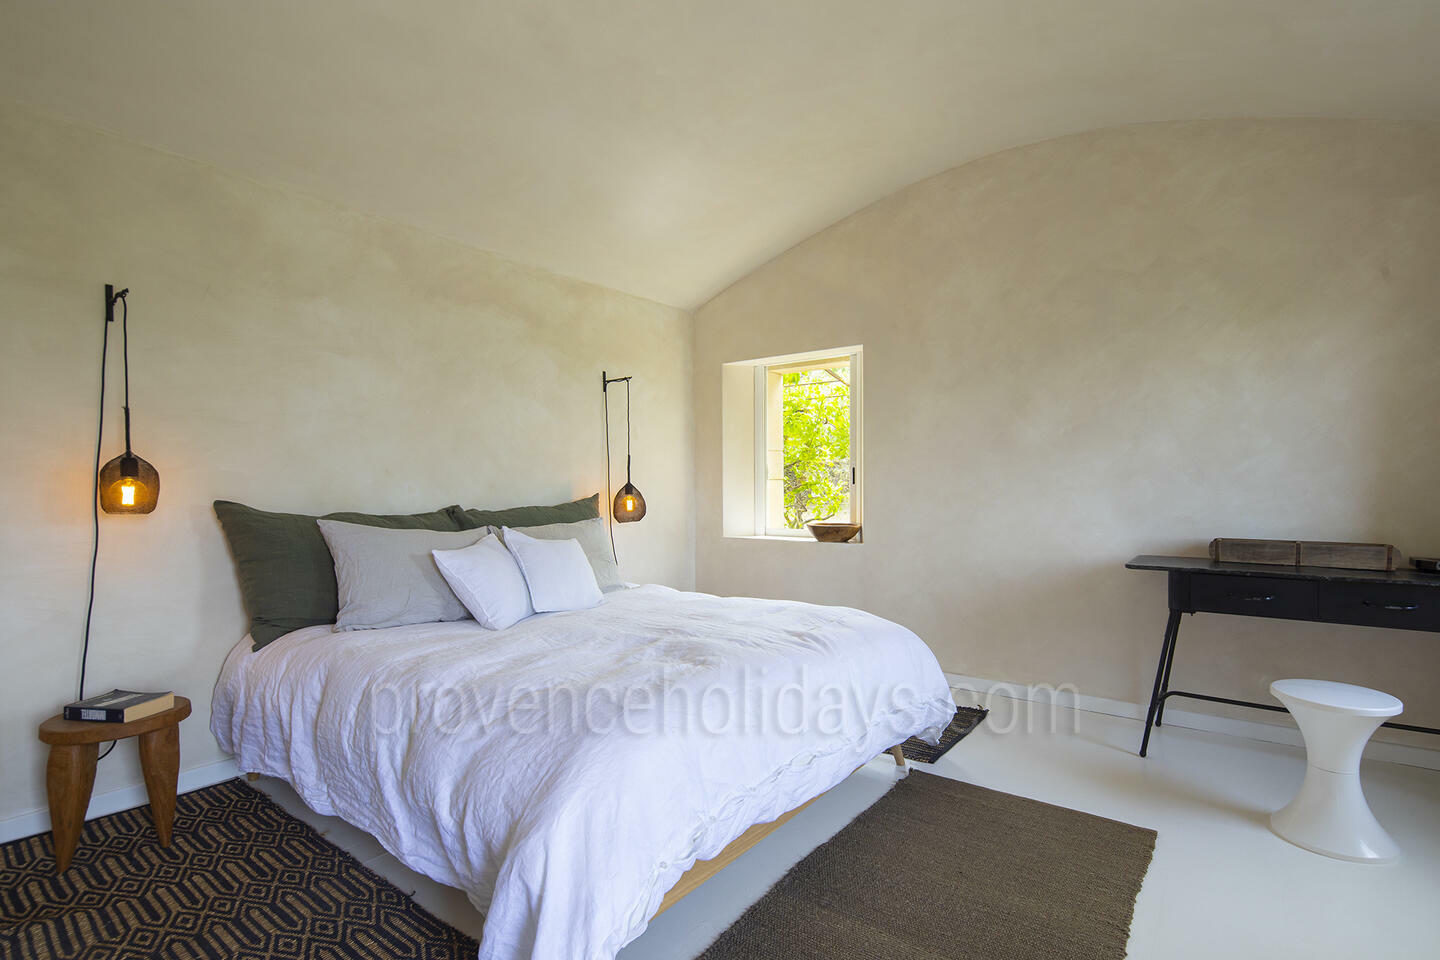 51 - Une Maison en Provence: Villa: Bedroom